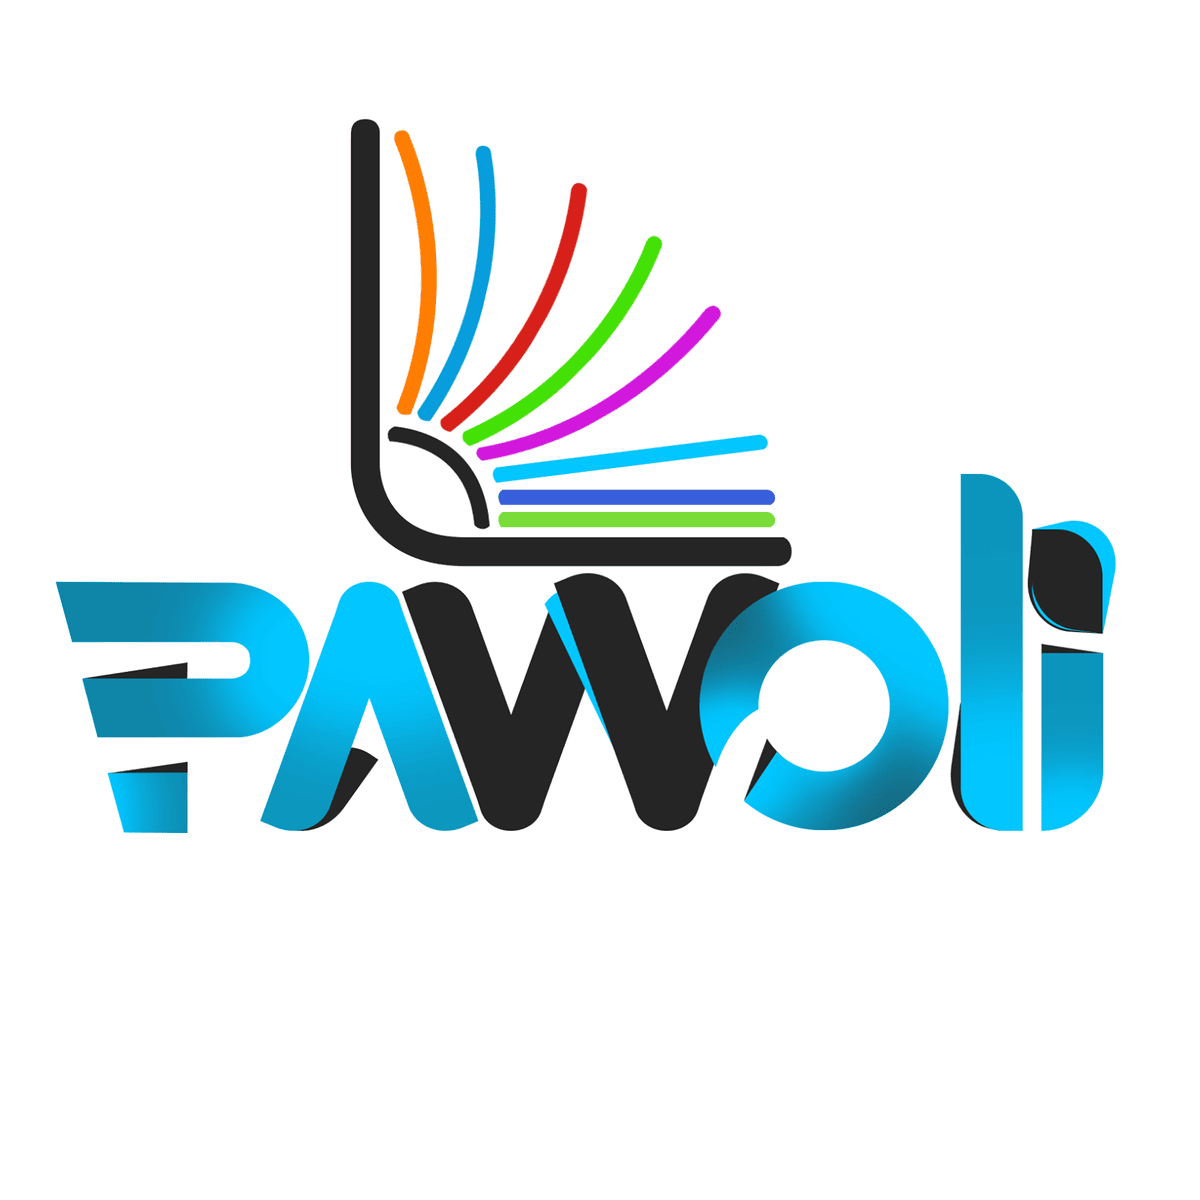 Les crises sociopolitiques au cœur de la 7e édition du festival PAWOLI